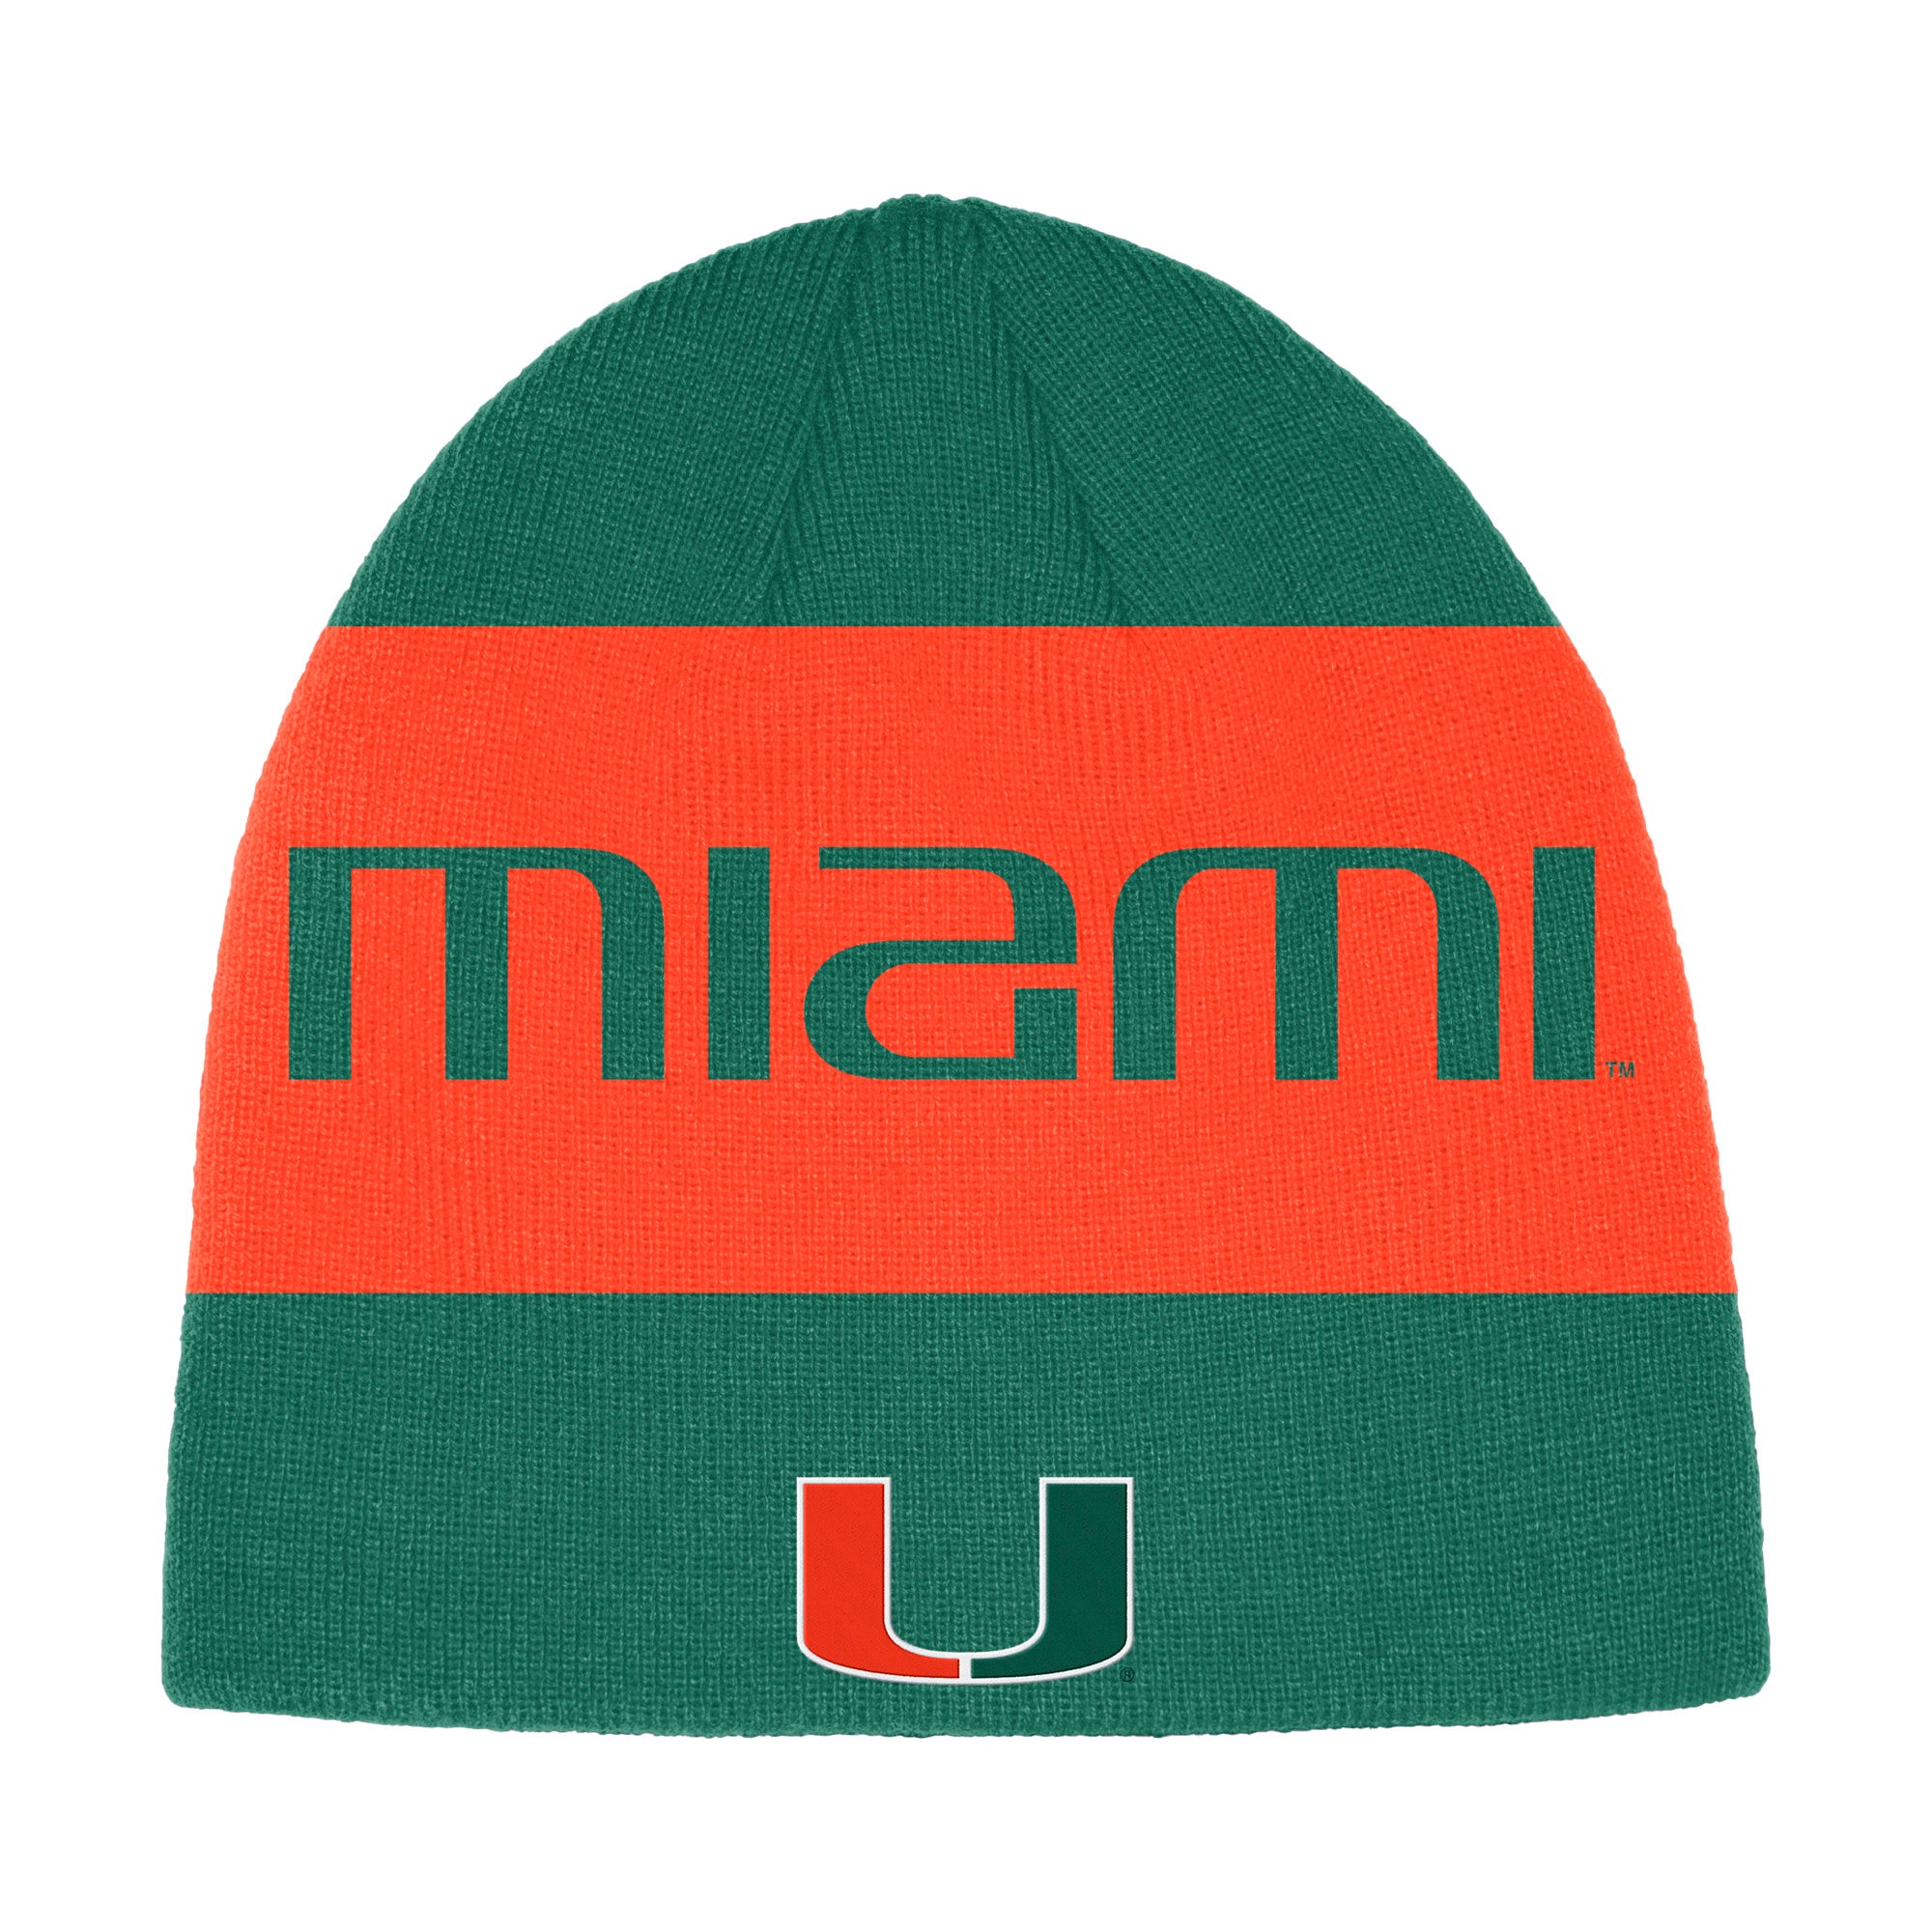 Miami Hurricanes adidas Coaches Beanie - Green/Orange